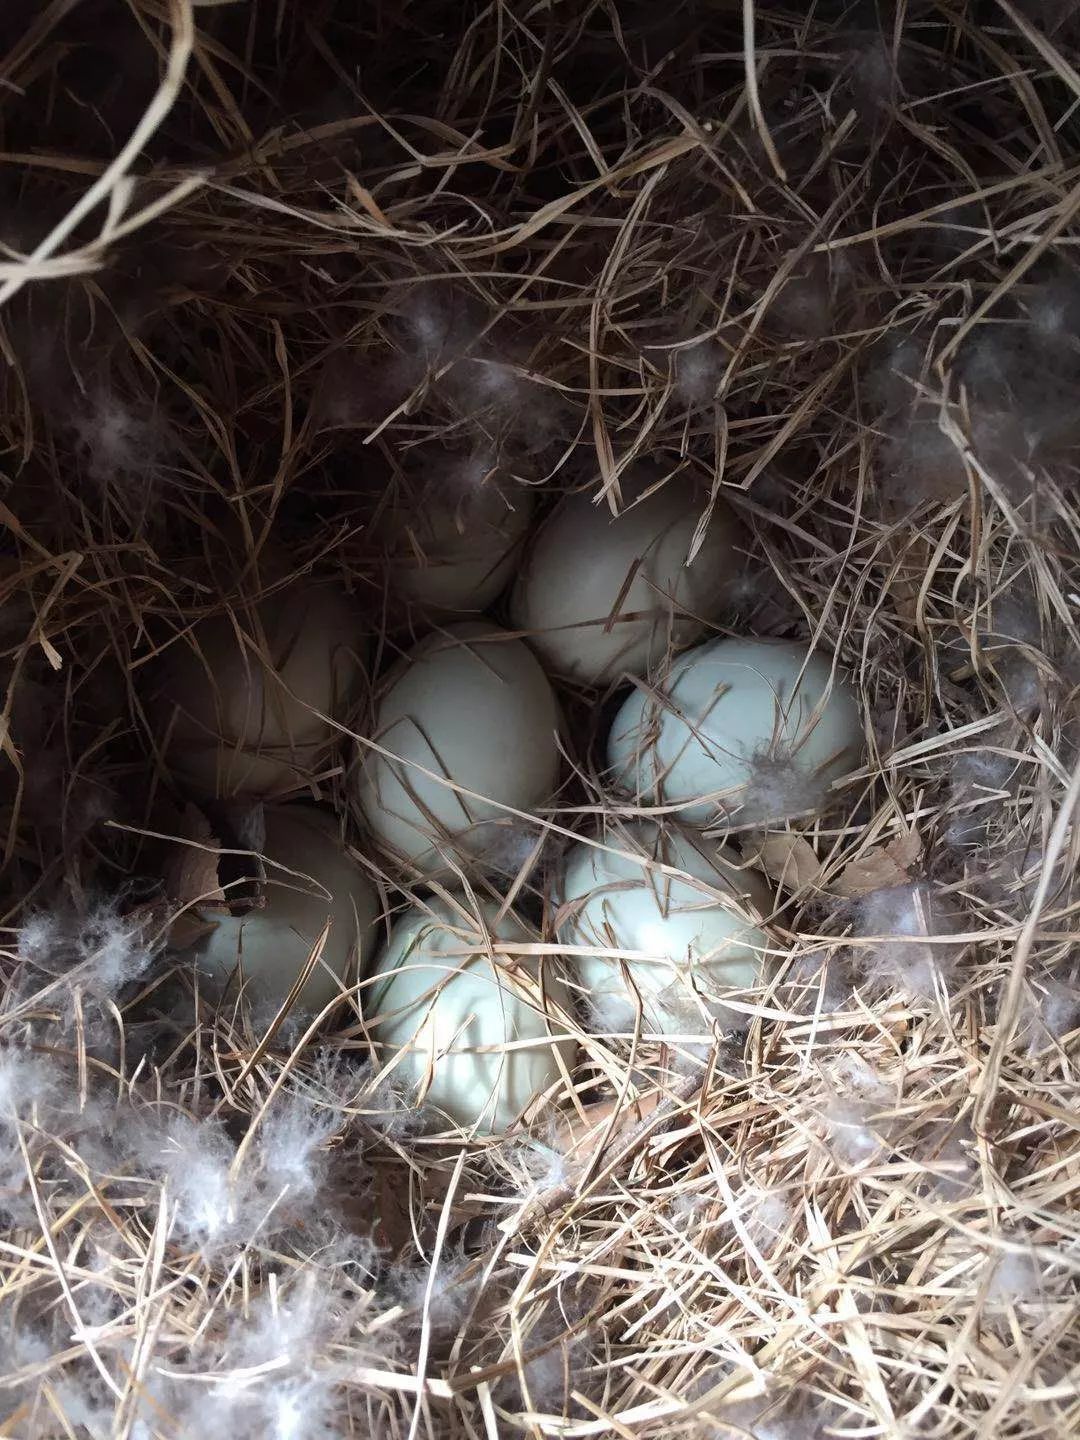 报喜!人民日报社金台园小湖里定居的一对野鸭夫妻生了8个宝宝(蛋)!